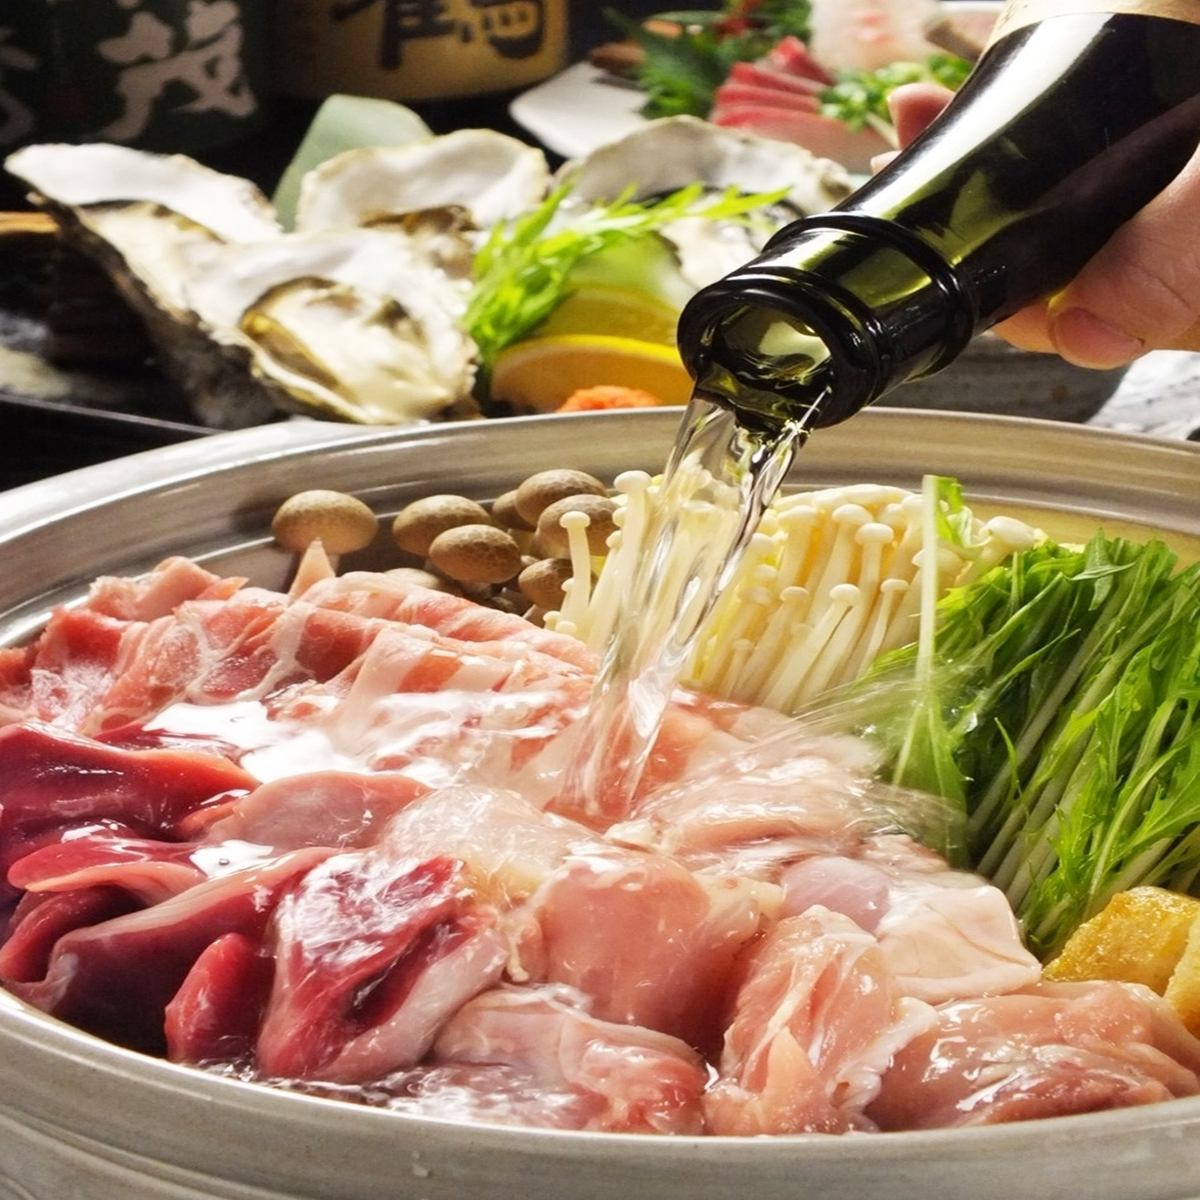 对于欢迎和欢送会♪广岛食材精心挑选的当然2H全友畅饮包括当地清酒8种菜肴4500日元